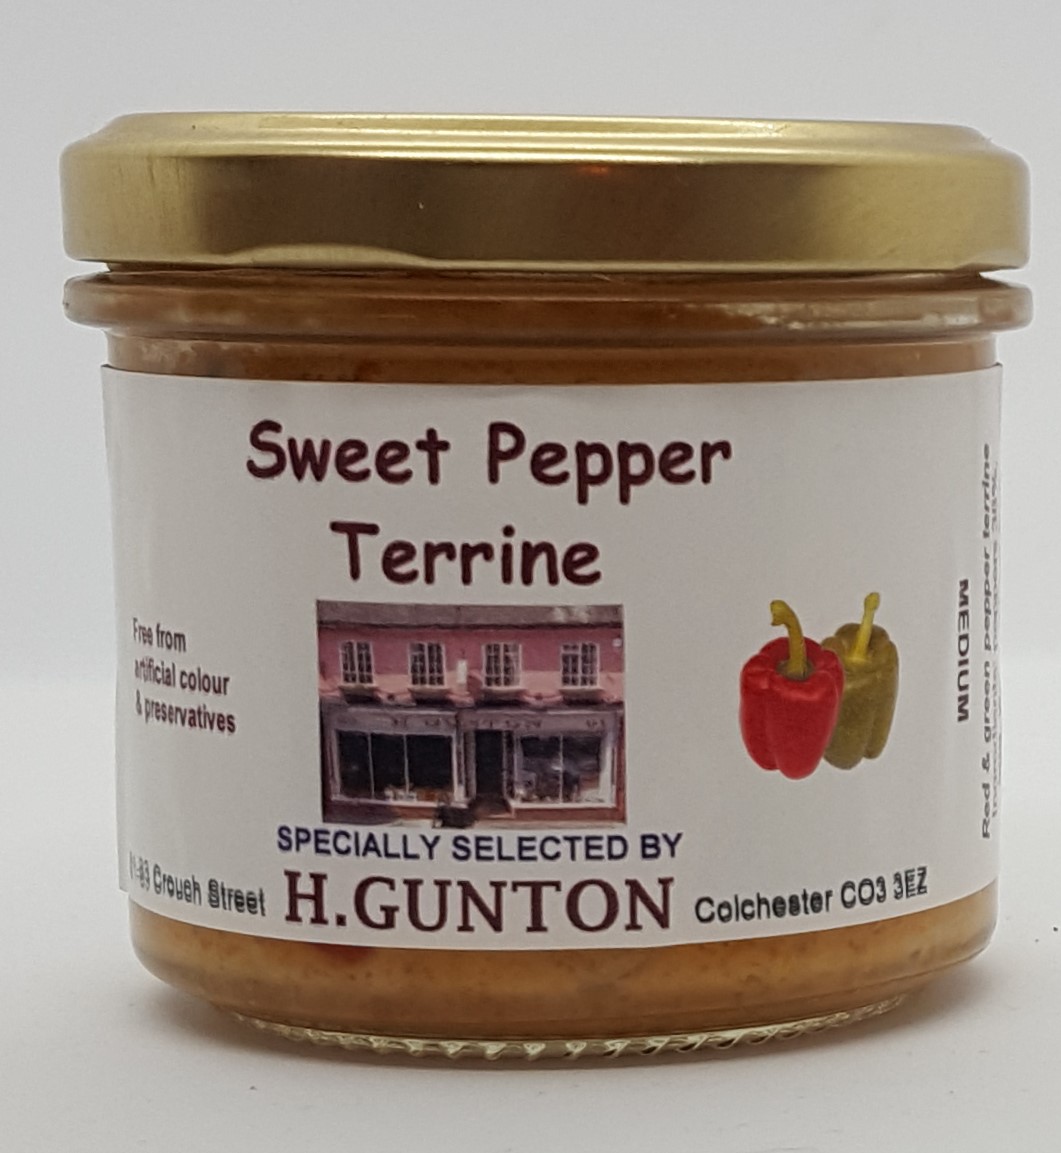 Sweet Pepper Terrine